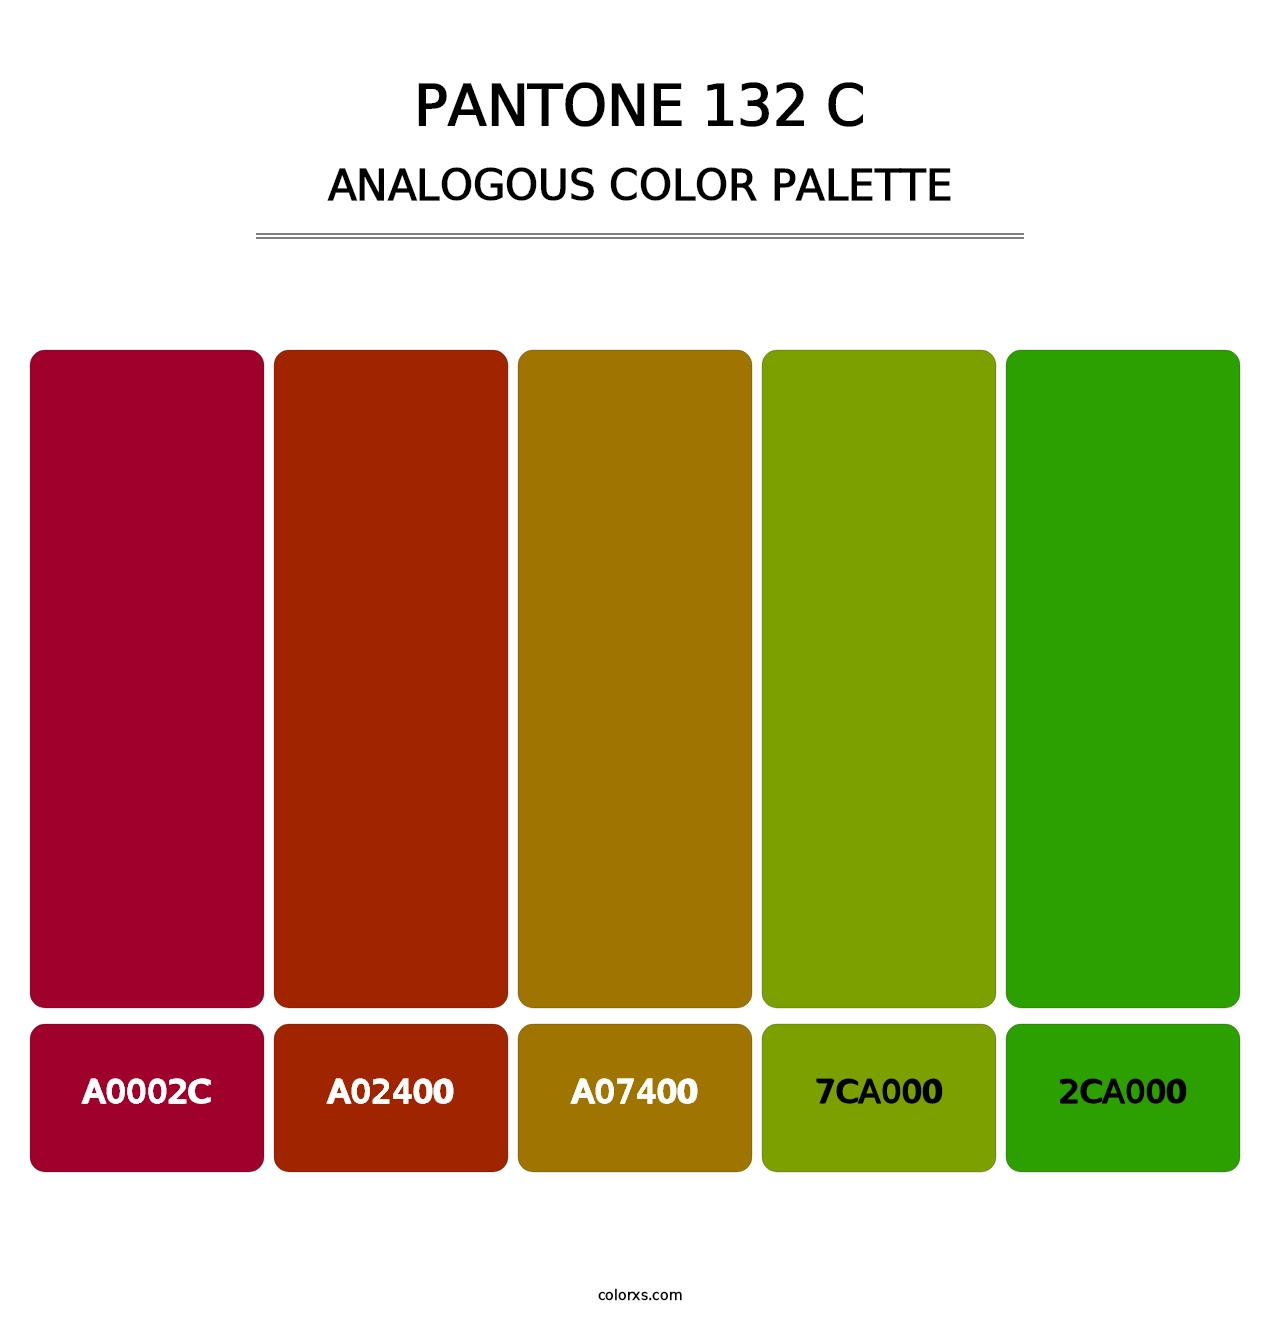 PANTONE 132 C - Analogous Color Palette